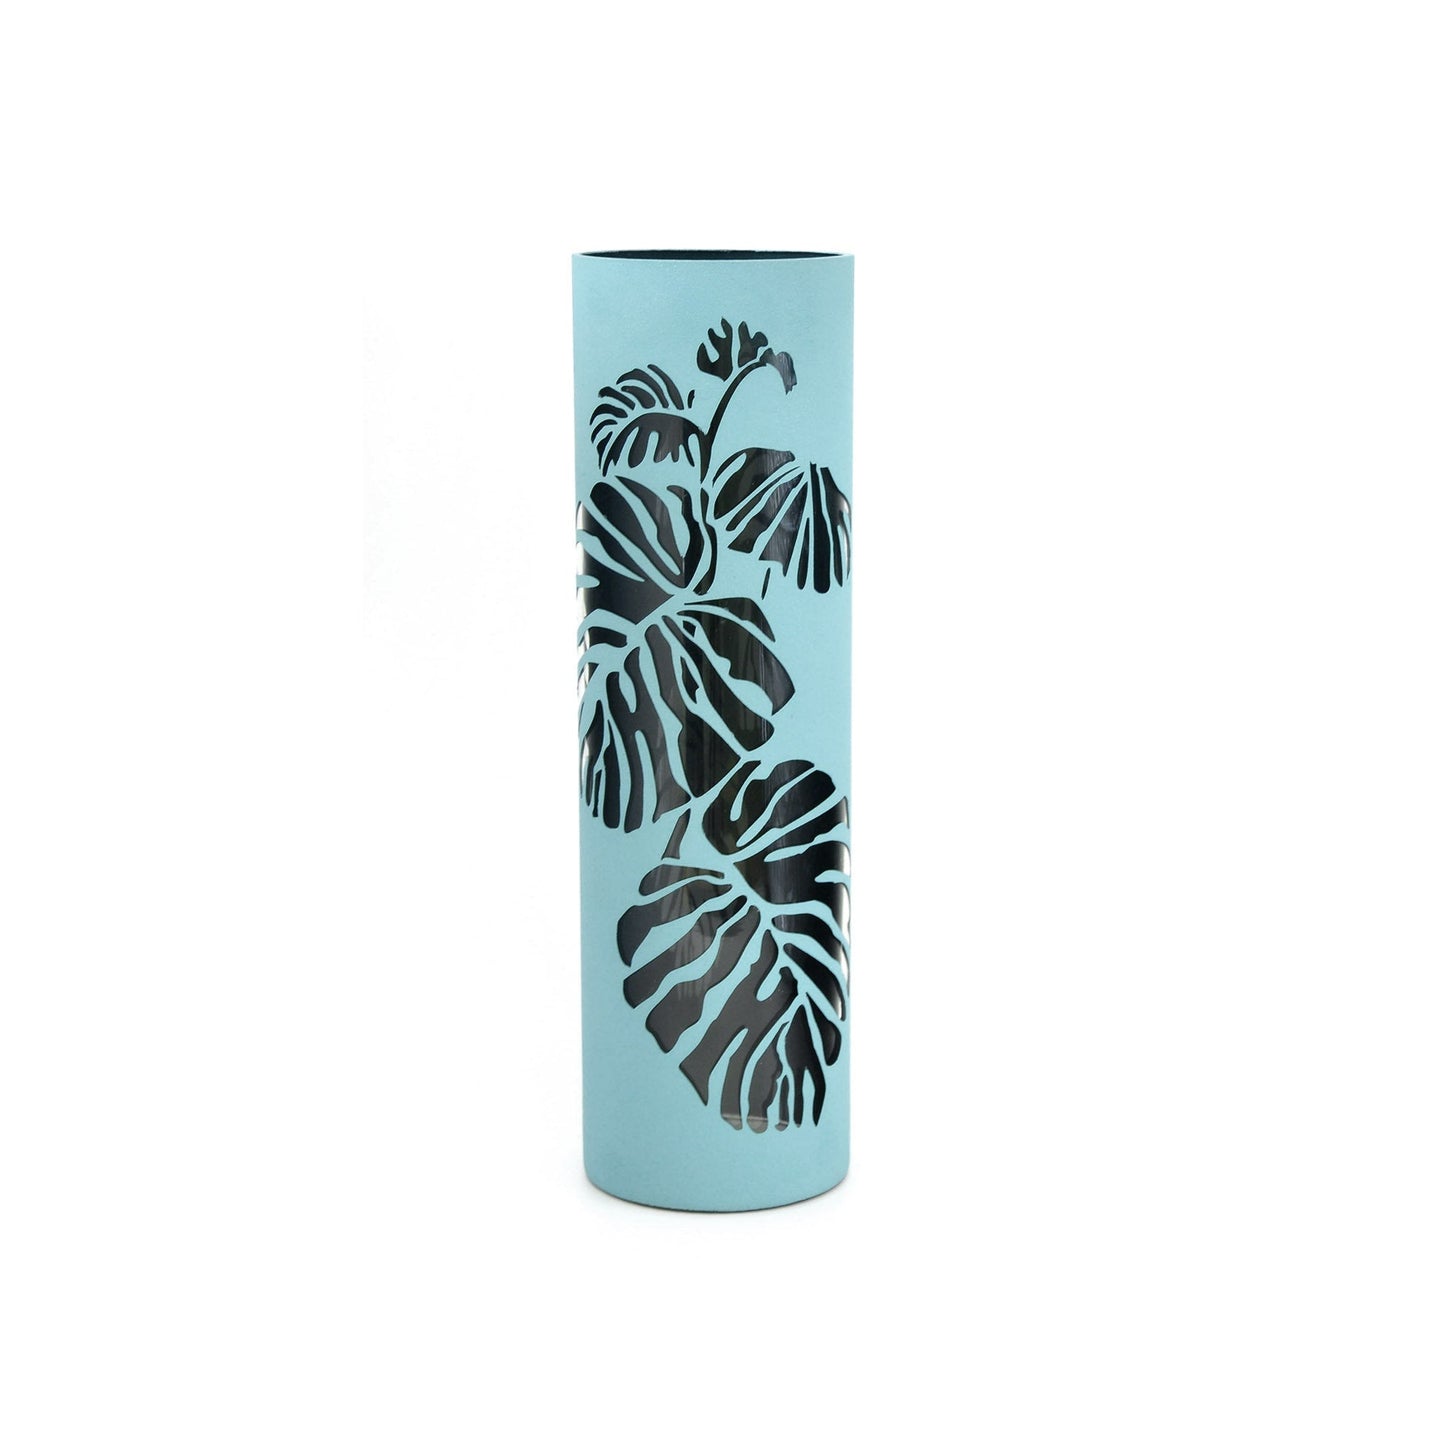 Clear leaves decorated glass vase | Glass vase for flowers | Cylinder Vase | Interior Design | Home Decor | Large Floor Vase 16 inch-0